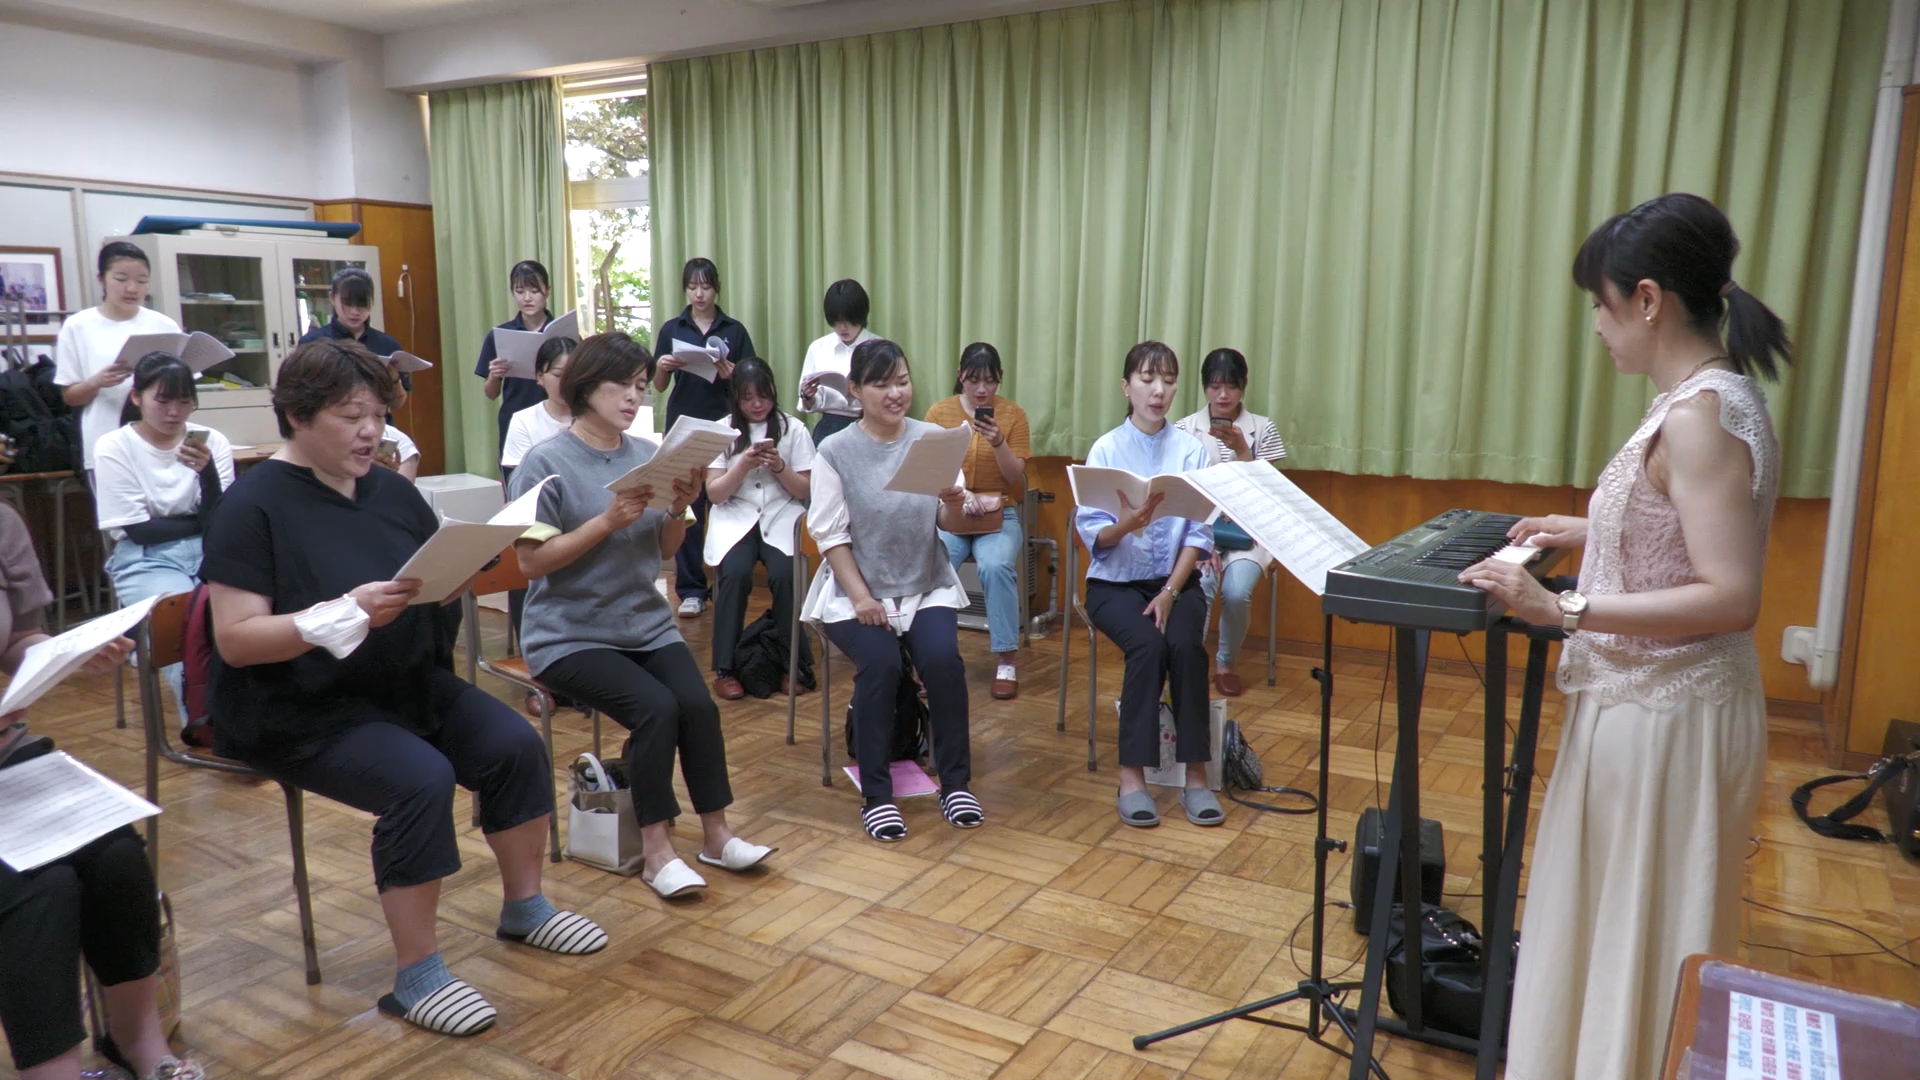 【動画】〈朝鮮創建75周年大公演〉合唱団、管弦楽団が第1回合同練習